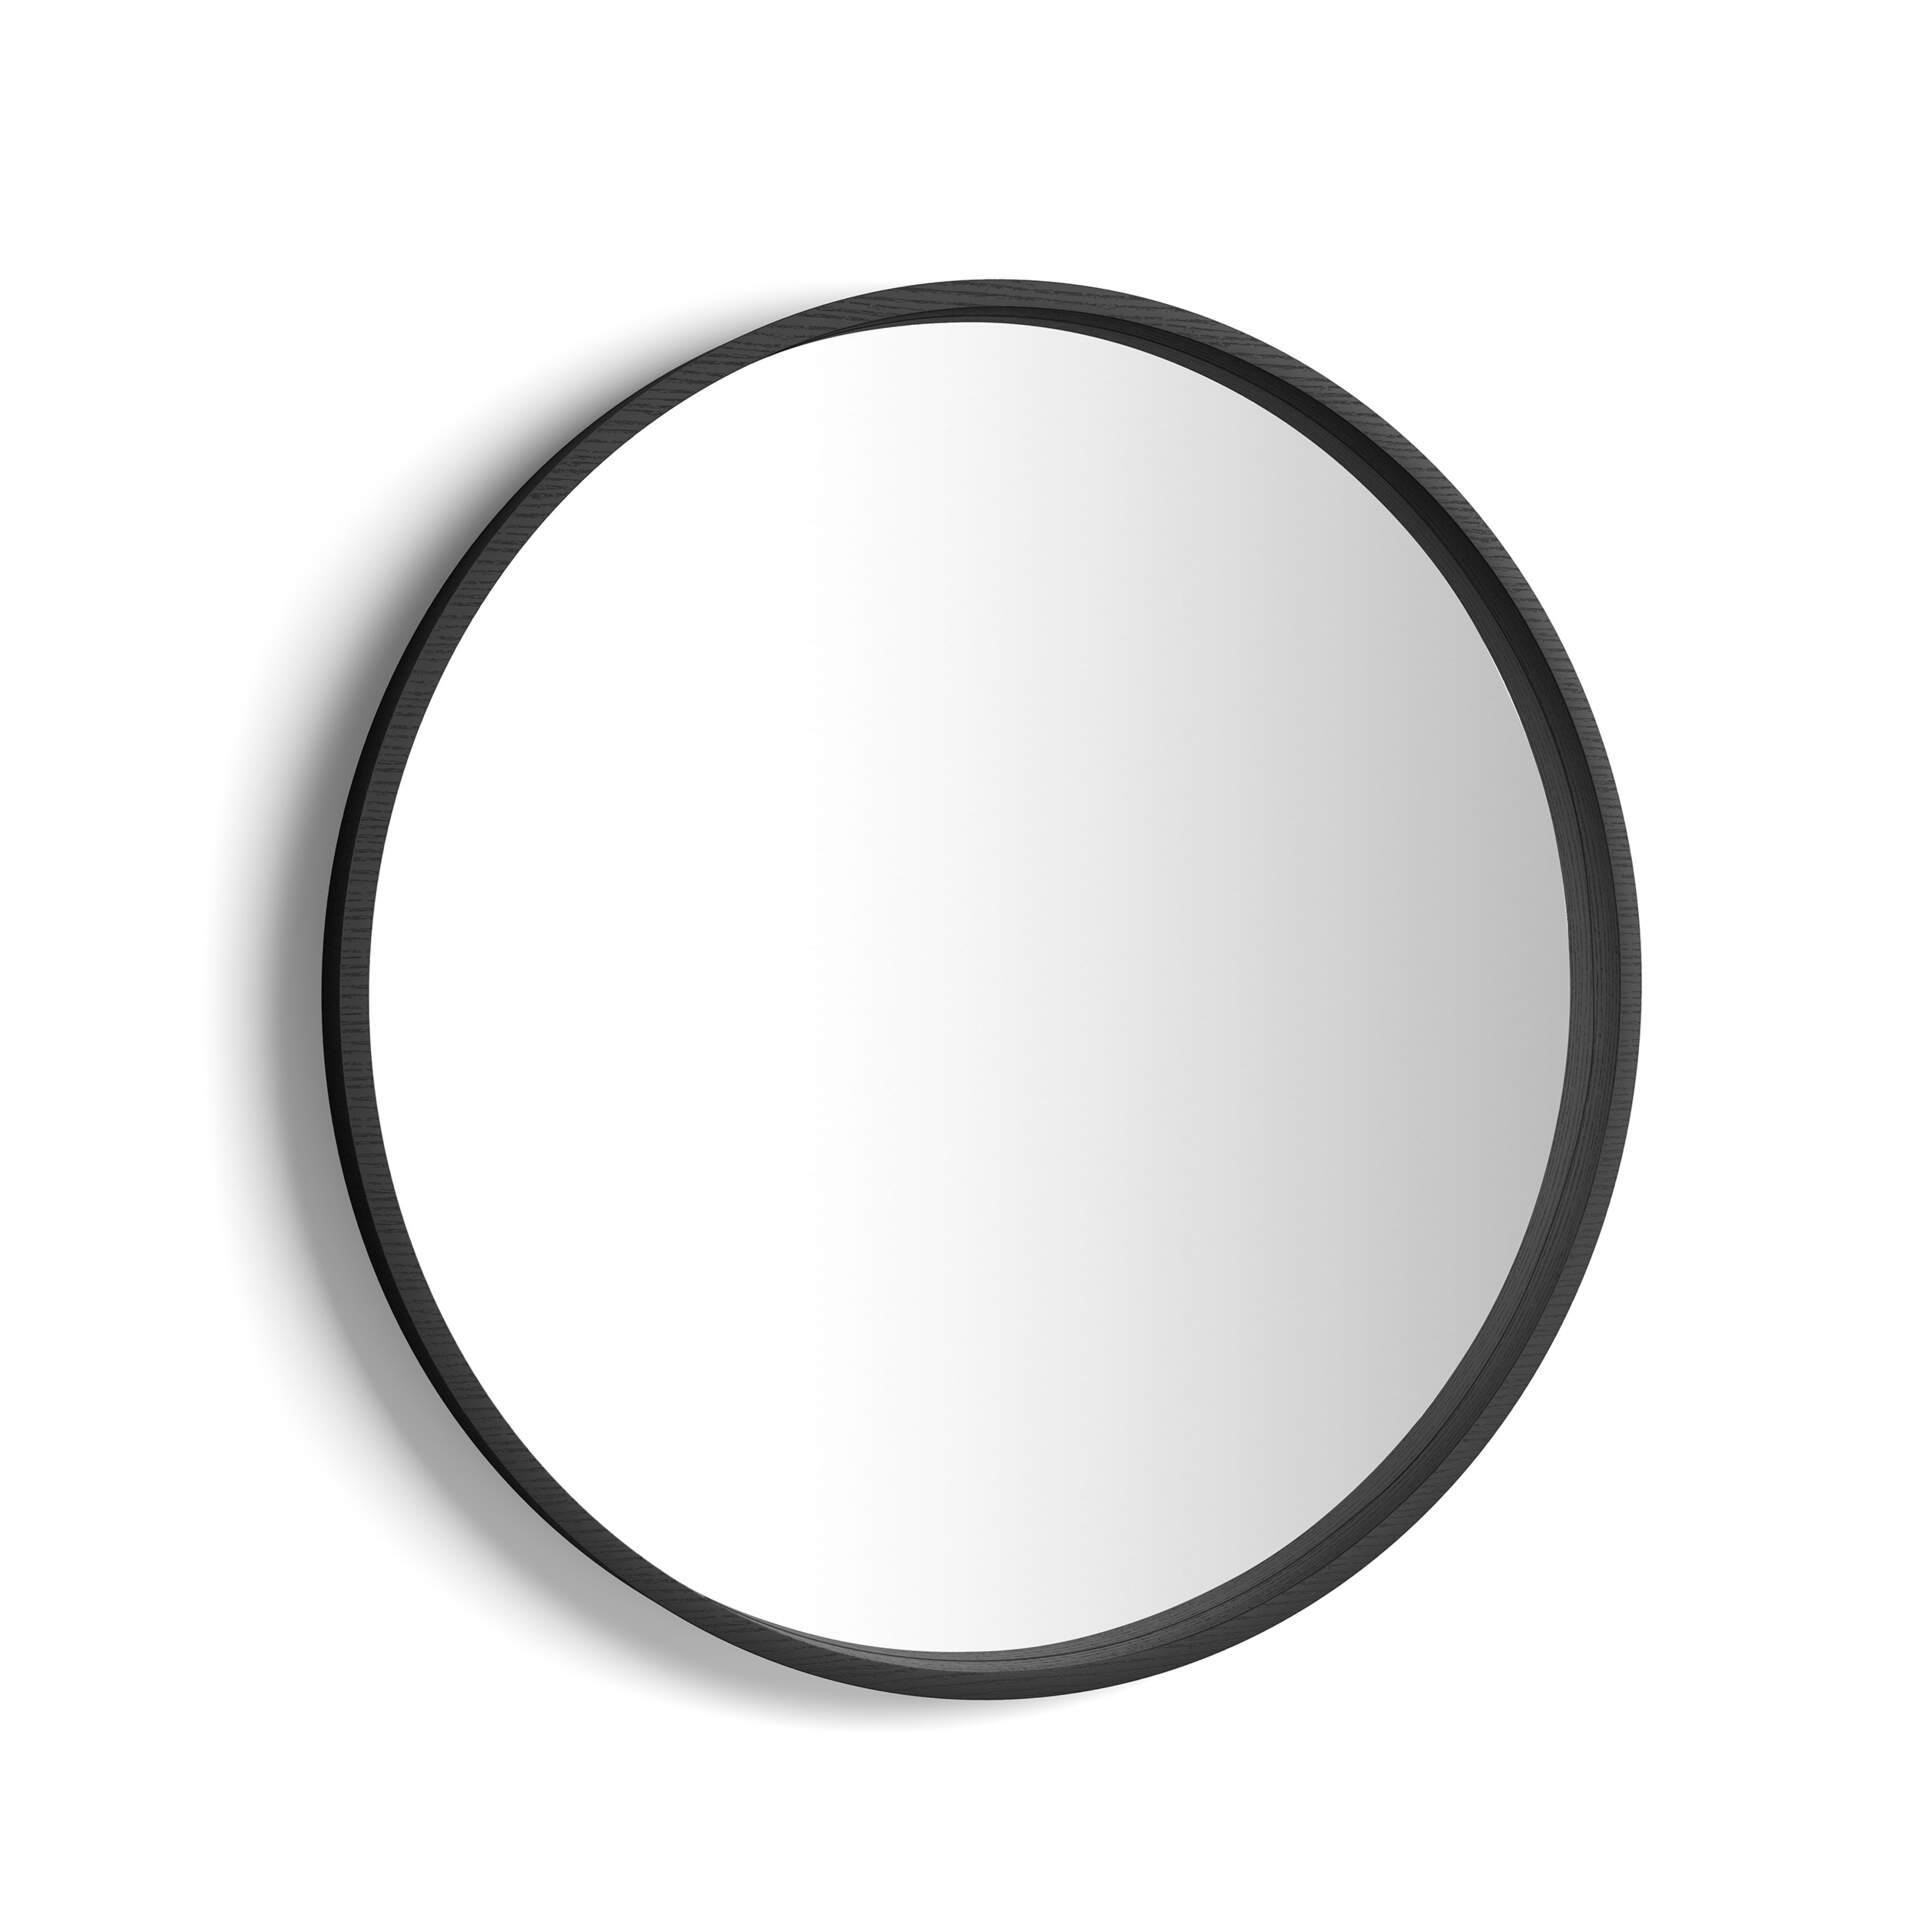 Mobili Fiver Specchio rotondo Olivia, diametro 82, Nero Frassino